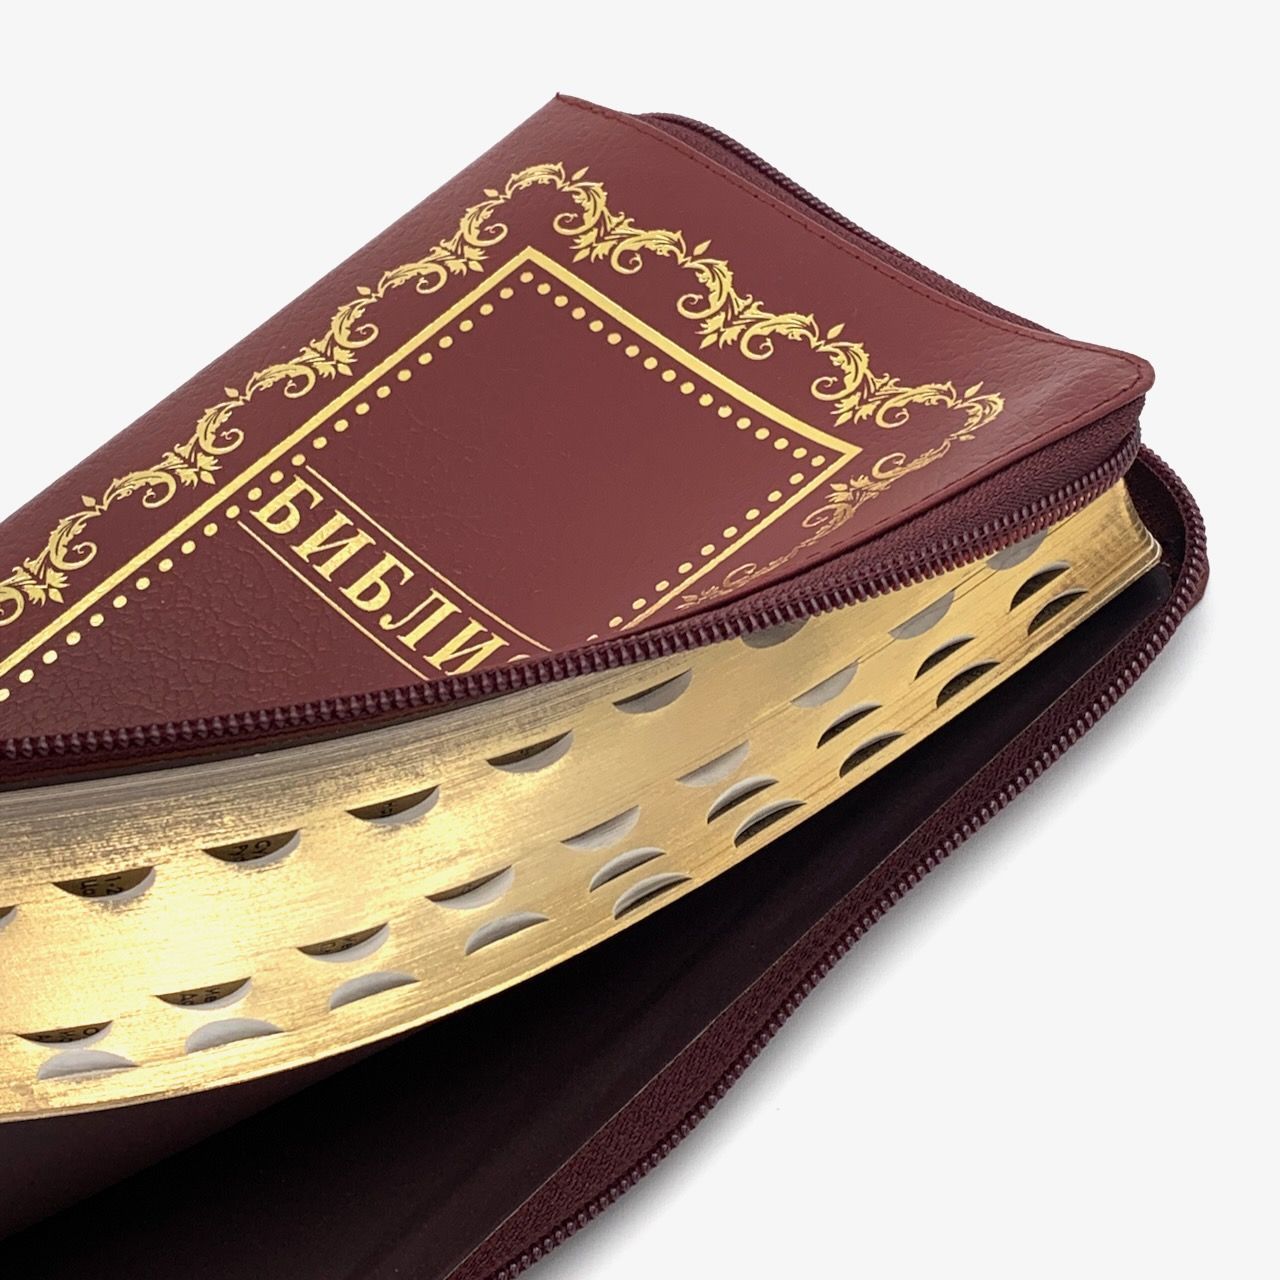 Библия 055zti код D6 дизайн "золотая рамка с орнаментом", кожаный переплет на молнии с индексами, цвет бордовый пятнистый, средний формат, 143*220 мм, параллельные места по центру страницы, белые страницы, золотой обрез